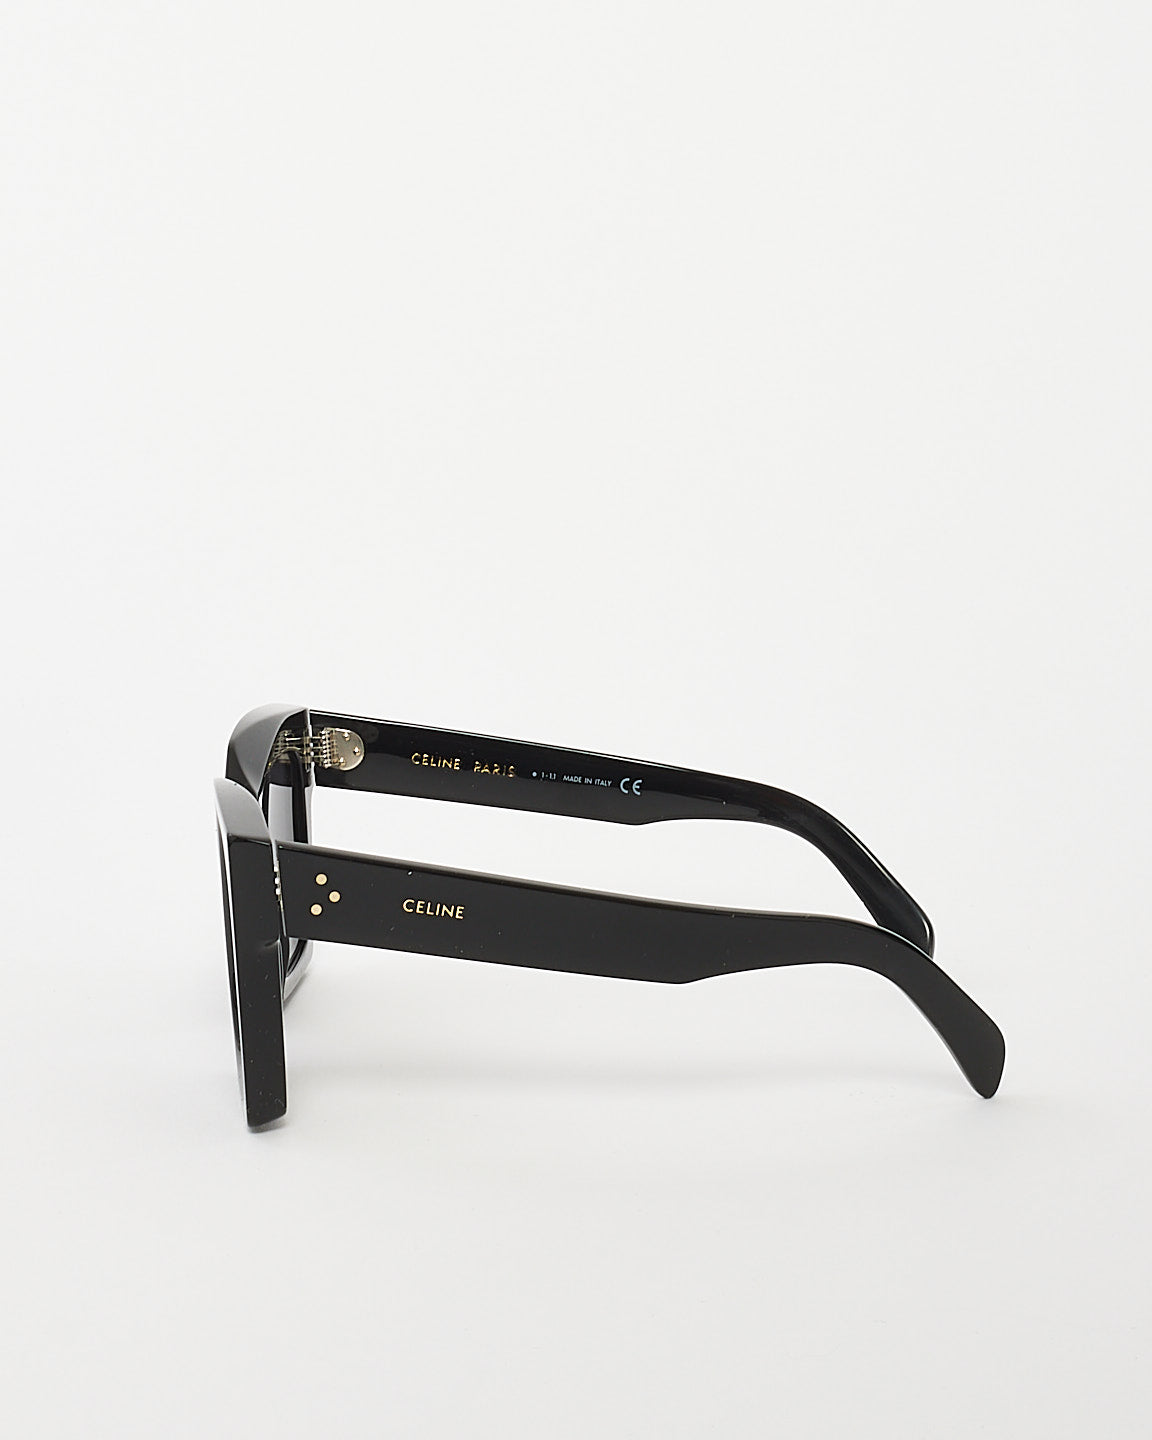 Celine Black Acetate Square Framed Sunglasses CL40130